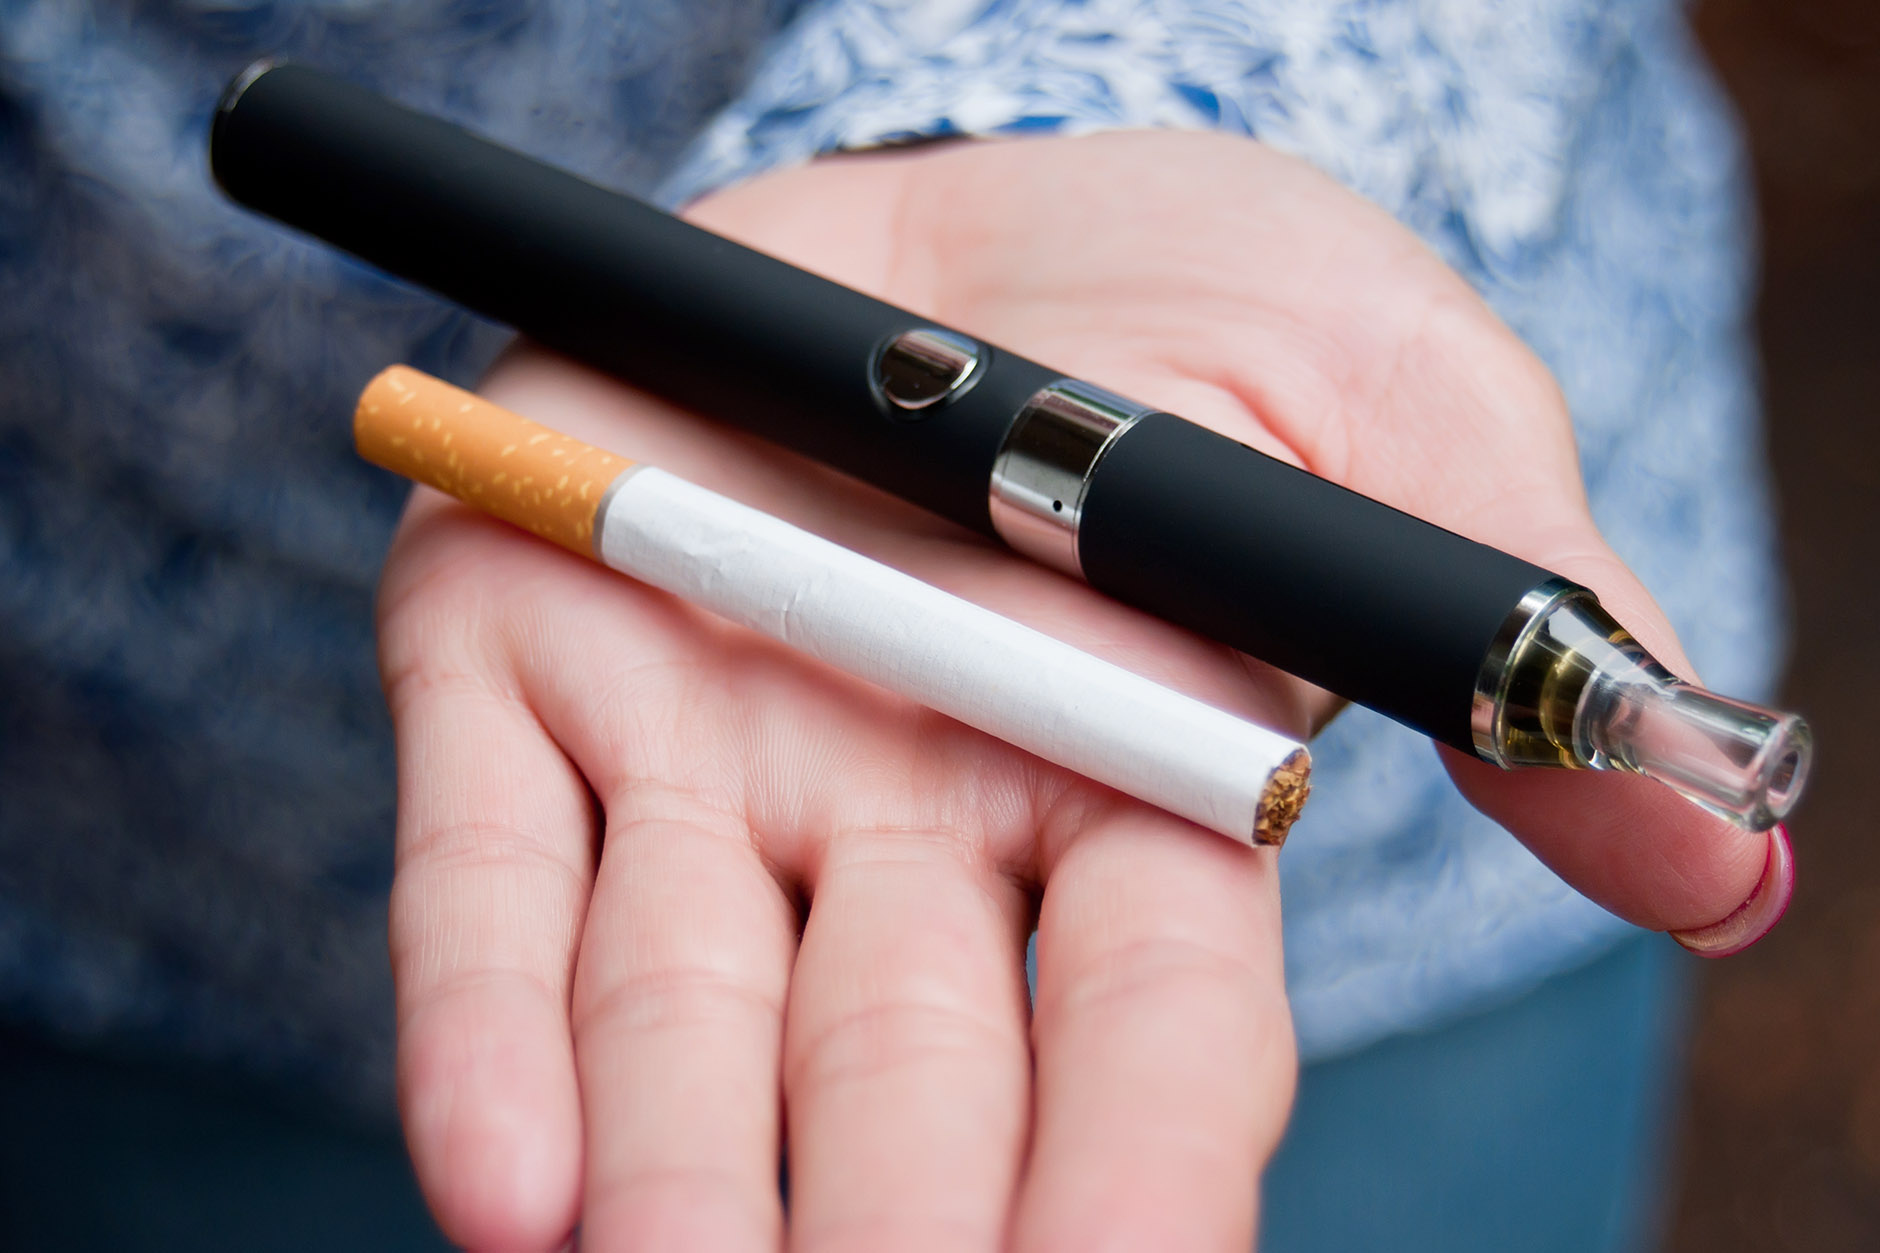 Sigaradan daha az zararlı diye tüm dünyada kullanımı artan elektronik sigaralarla ilgili gerçekler tedirgin etmeye başladı.